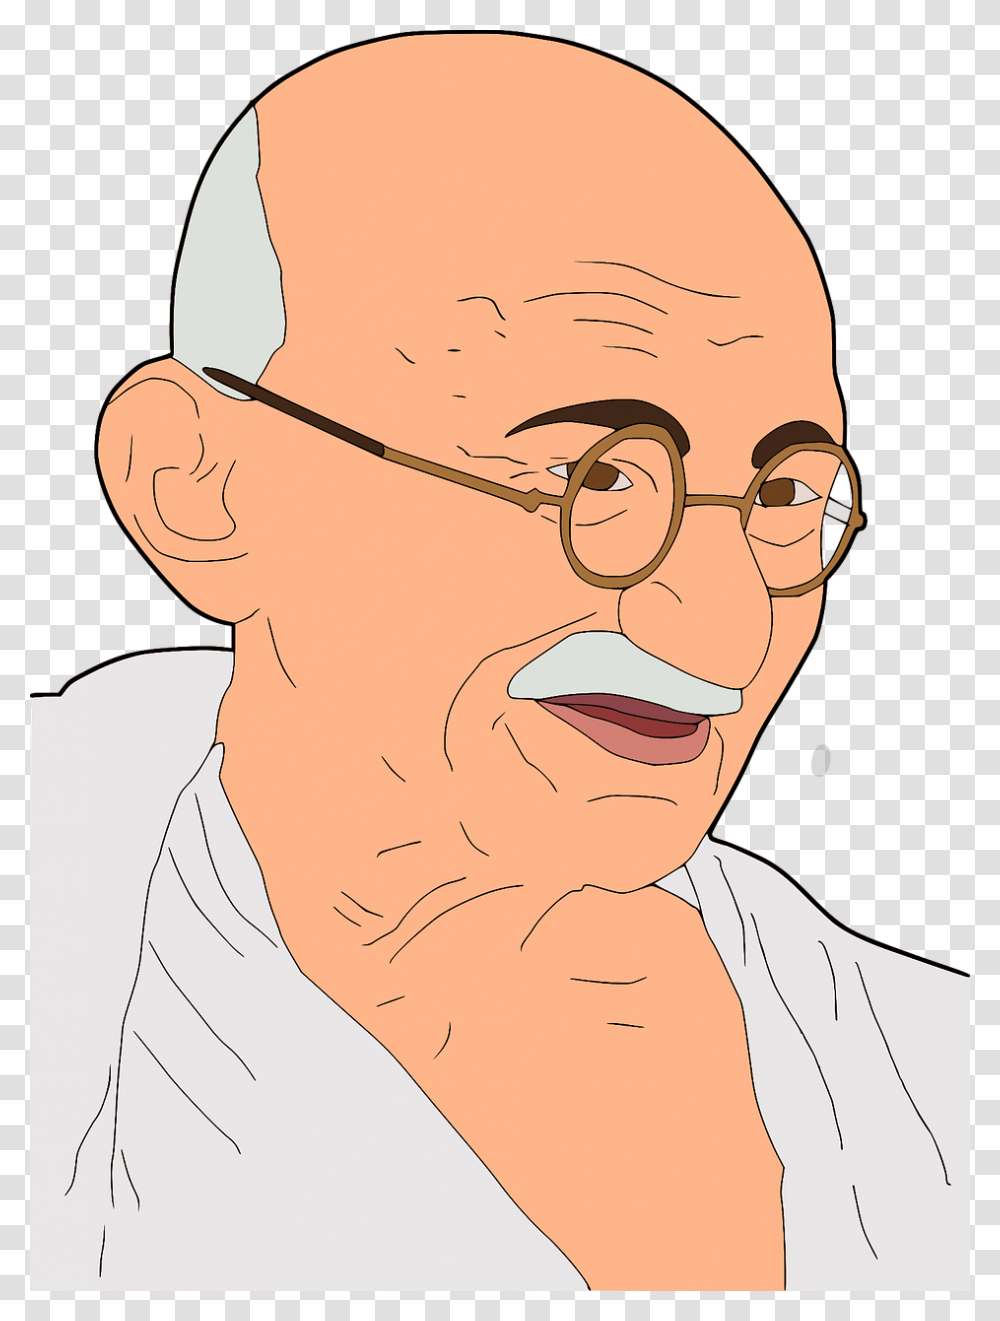 Mahatma Gandhi Gandhi I Cartoon Picture Of Mahatma Gandhi, Head, Face, Person, Human Transparent Png